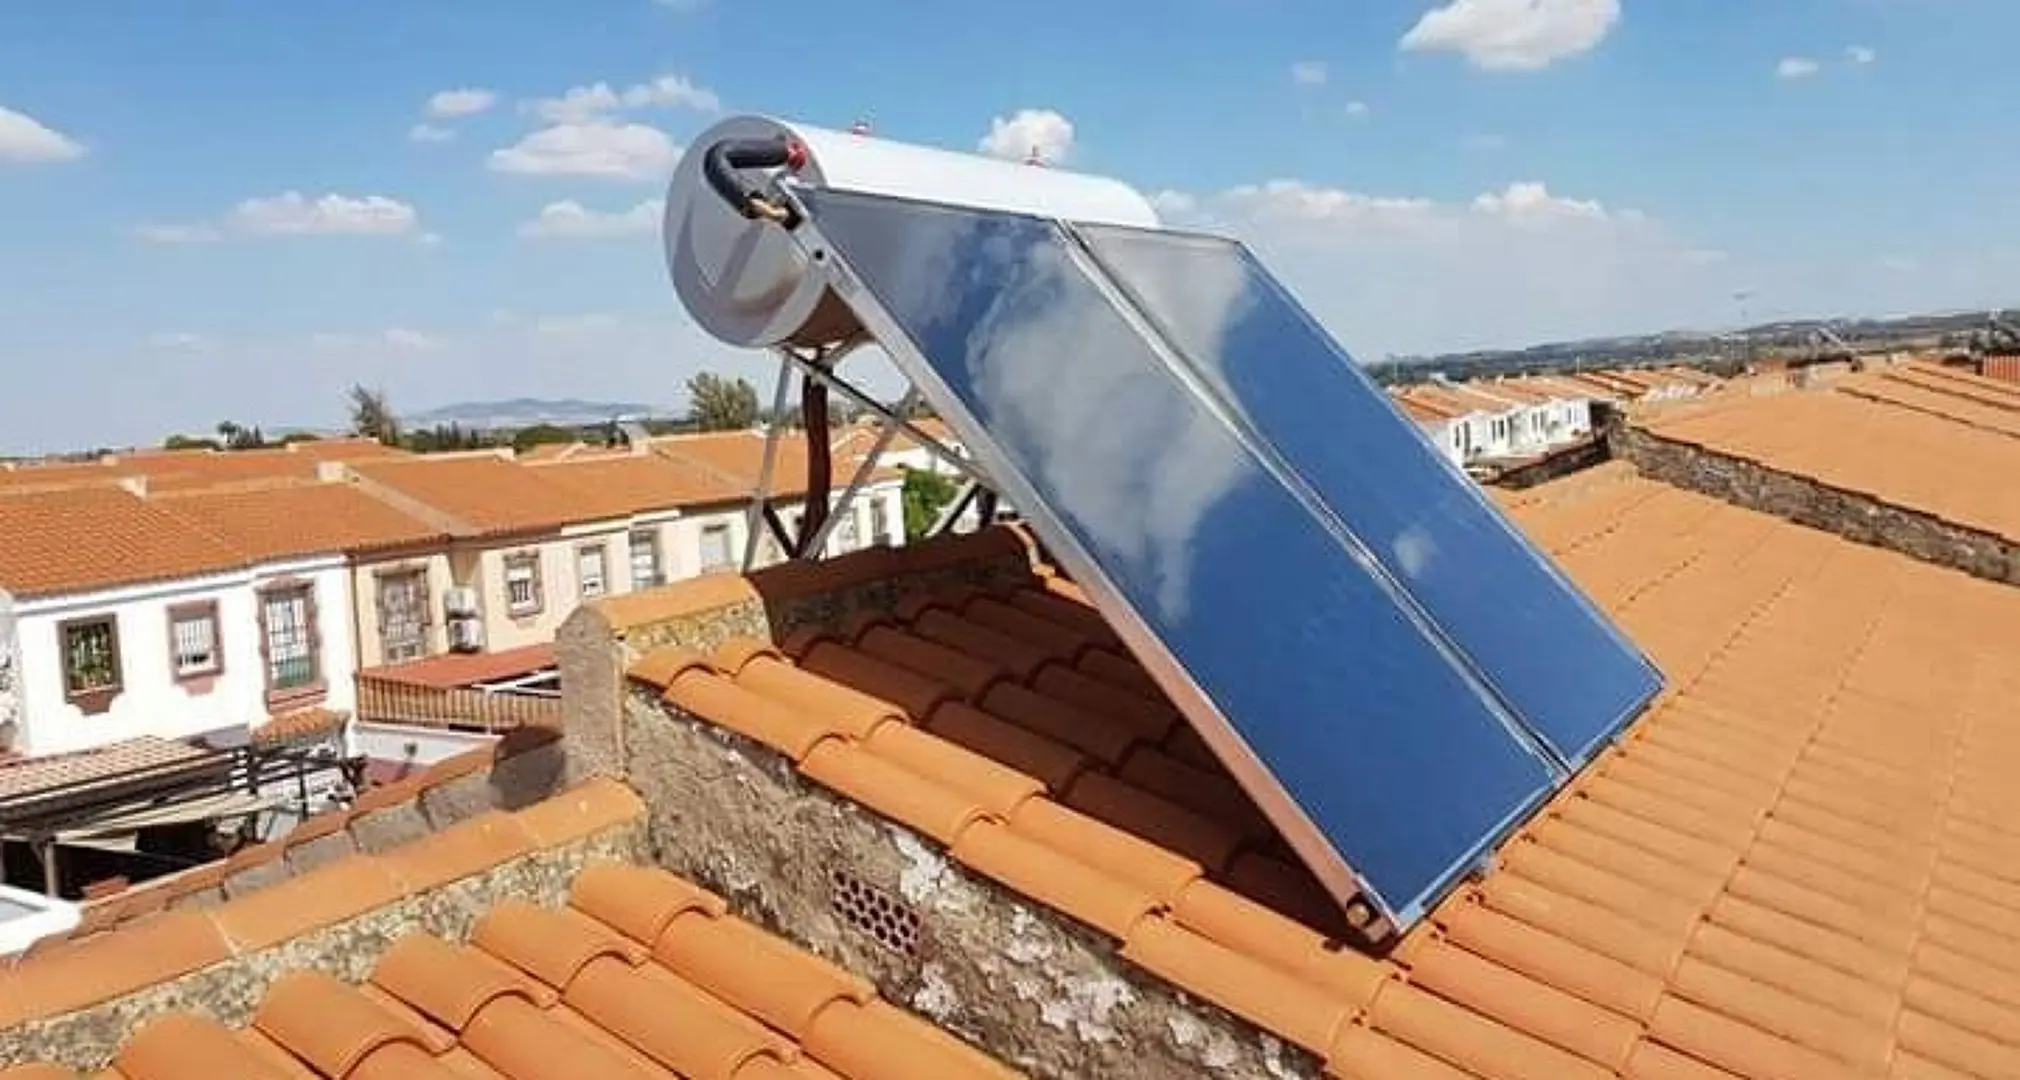 instalacion de recubrimuento termico exterior mas.placa solar fotovoltaica - Qué son instalaciones solares térmicas